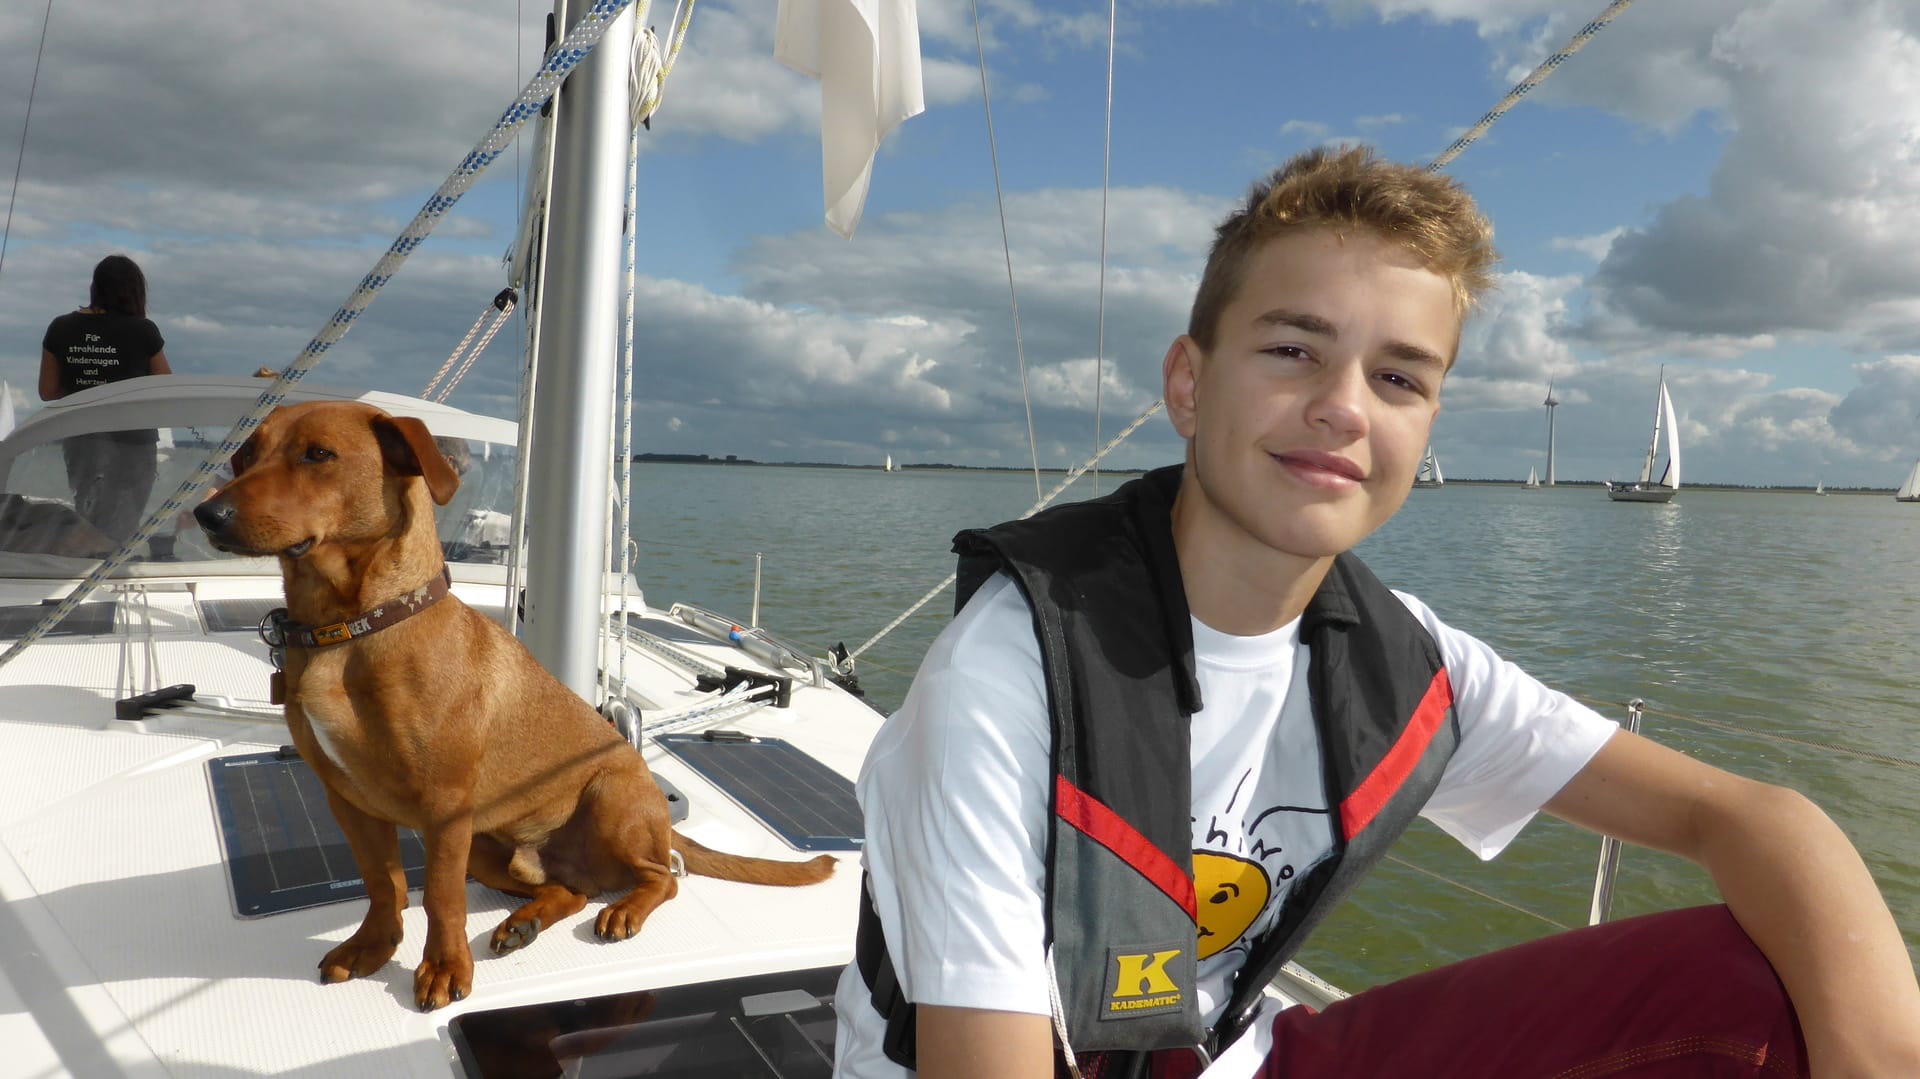 Die Gruppe "sunshine4kids“ organisiert Segelreisen für trauernde Kinder, wie den 16-jährigen Tom.